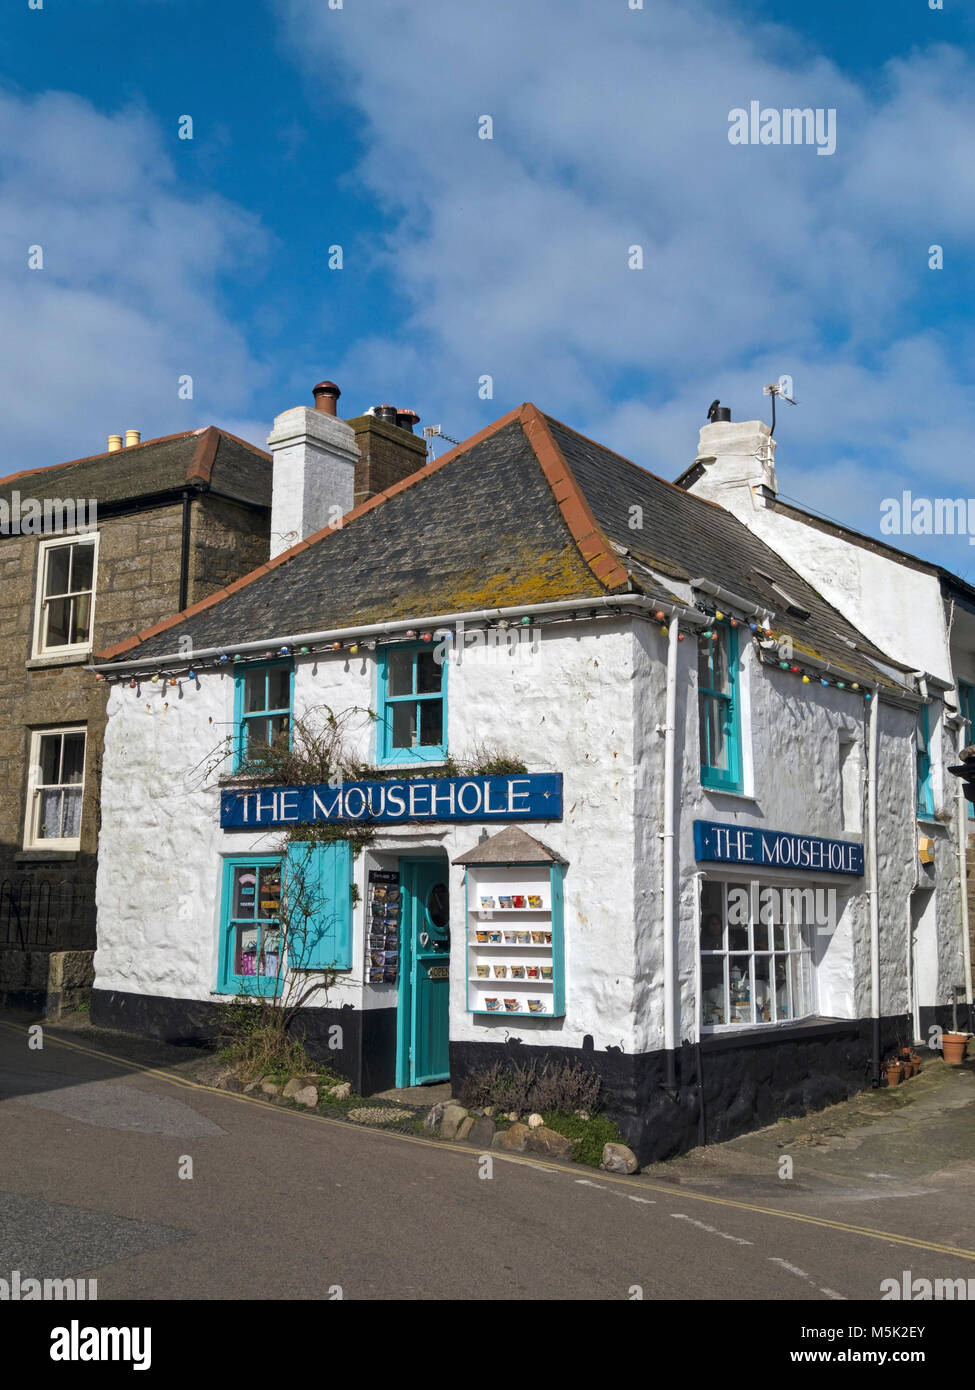 Old whitewashed seaside corner gift shop Mousehole, Cornwall, England, UK Stock Photo